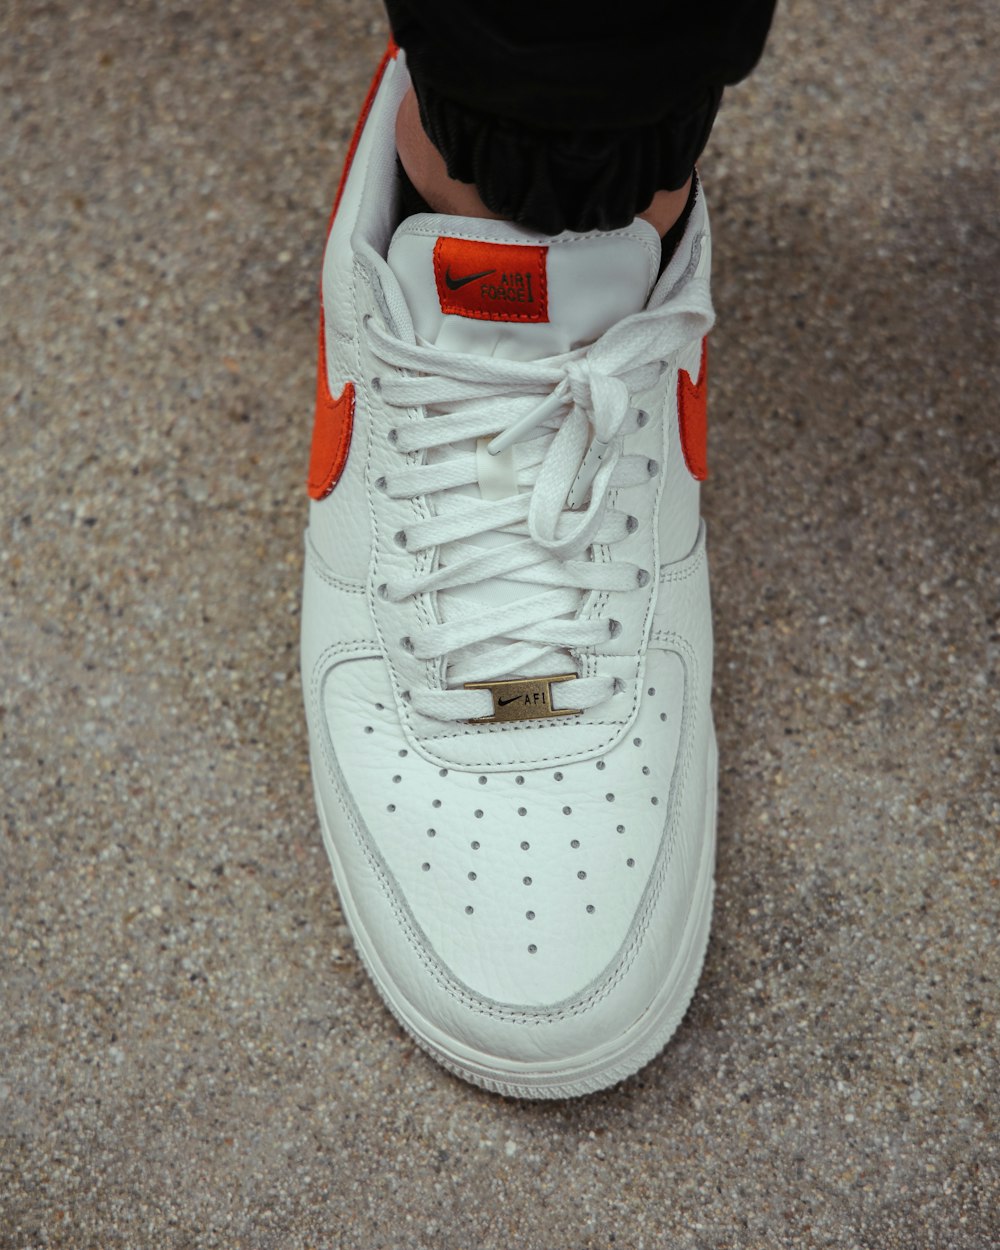 Black white and red nike athletic shoe photo – Free Usa Image on Unsplash